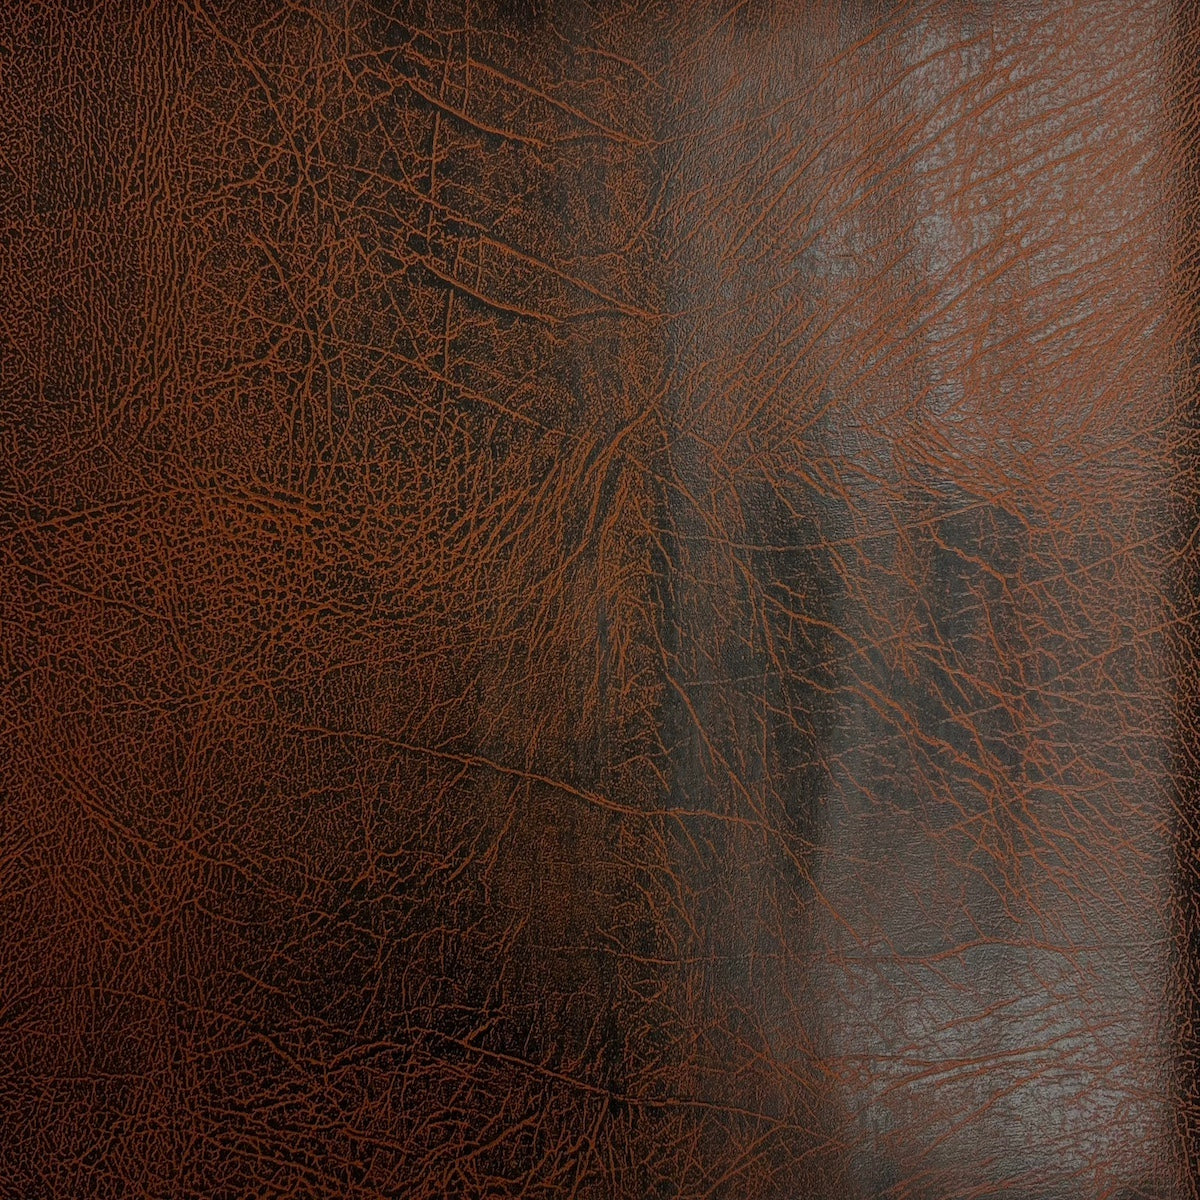 Tela de vinilo de gamuza de cuero sintético envejecido vintage de cobre